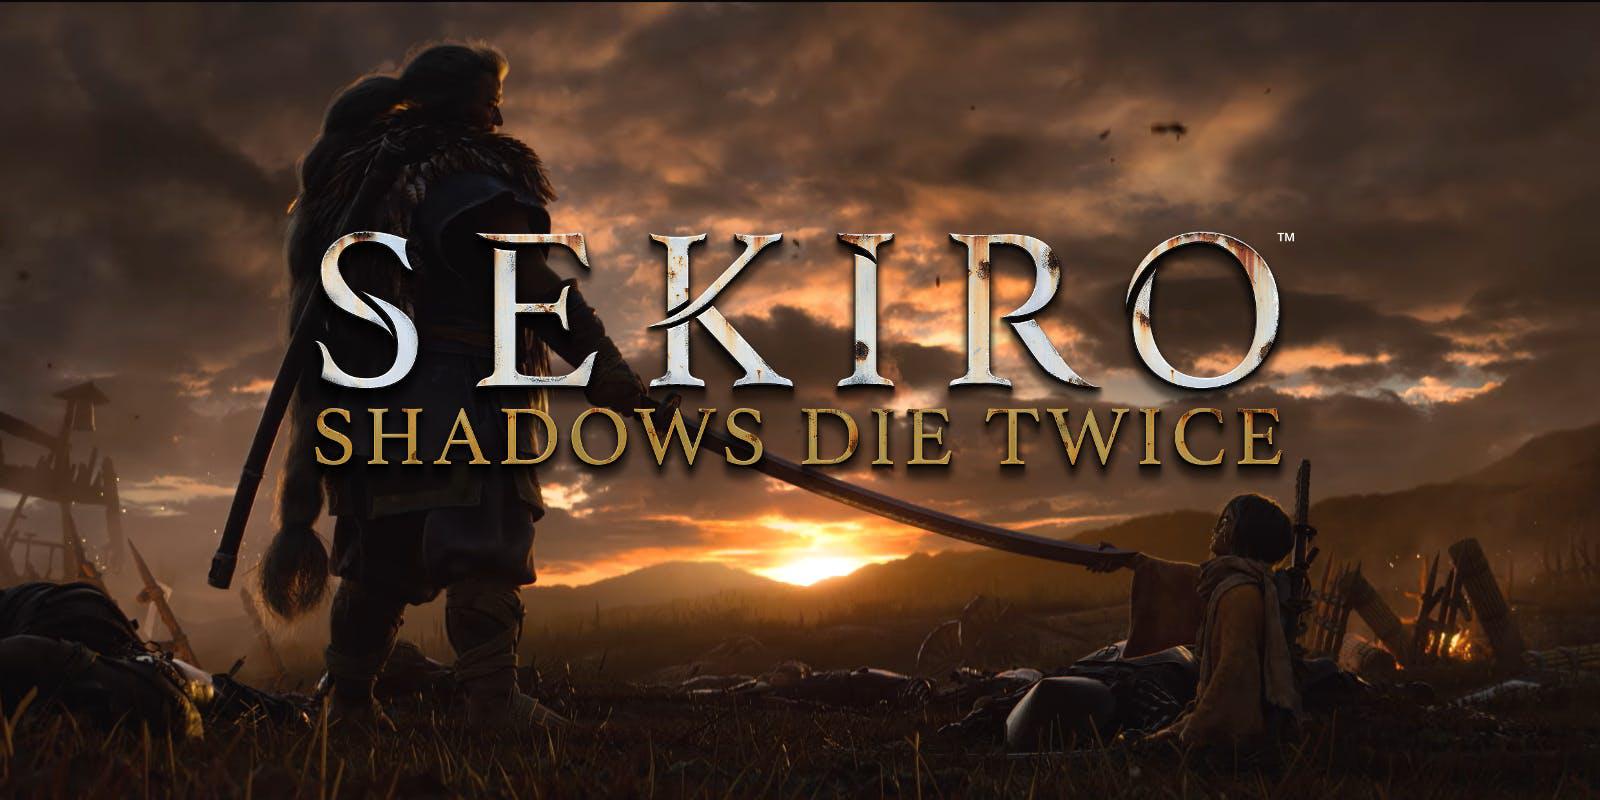 Sekiro Shadows Die Twice HD Desktop Wallpaper for K Ultra HD